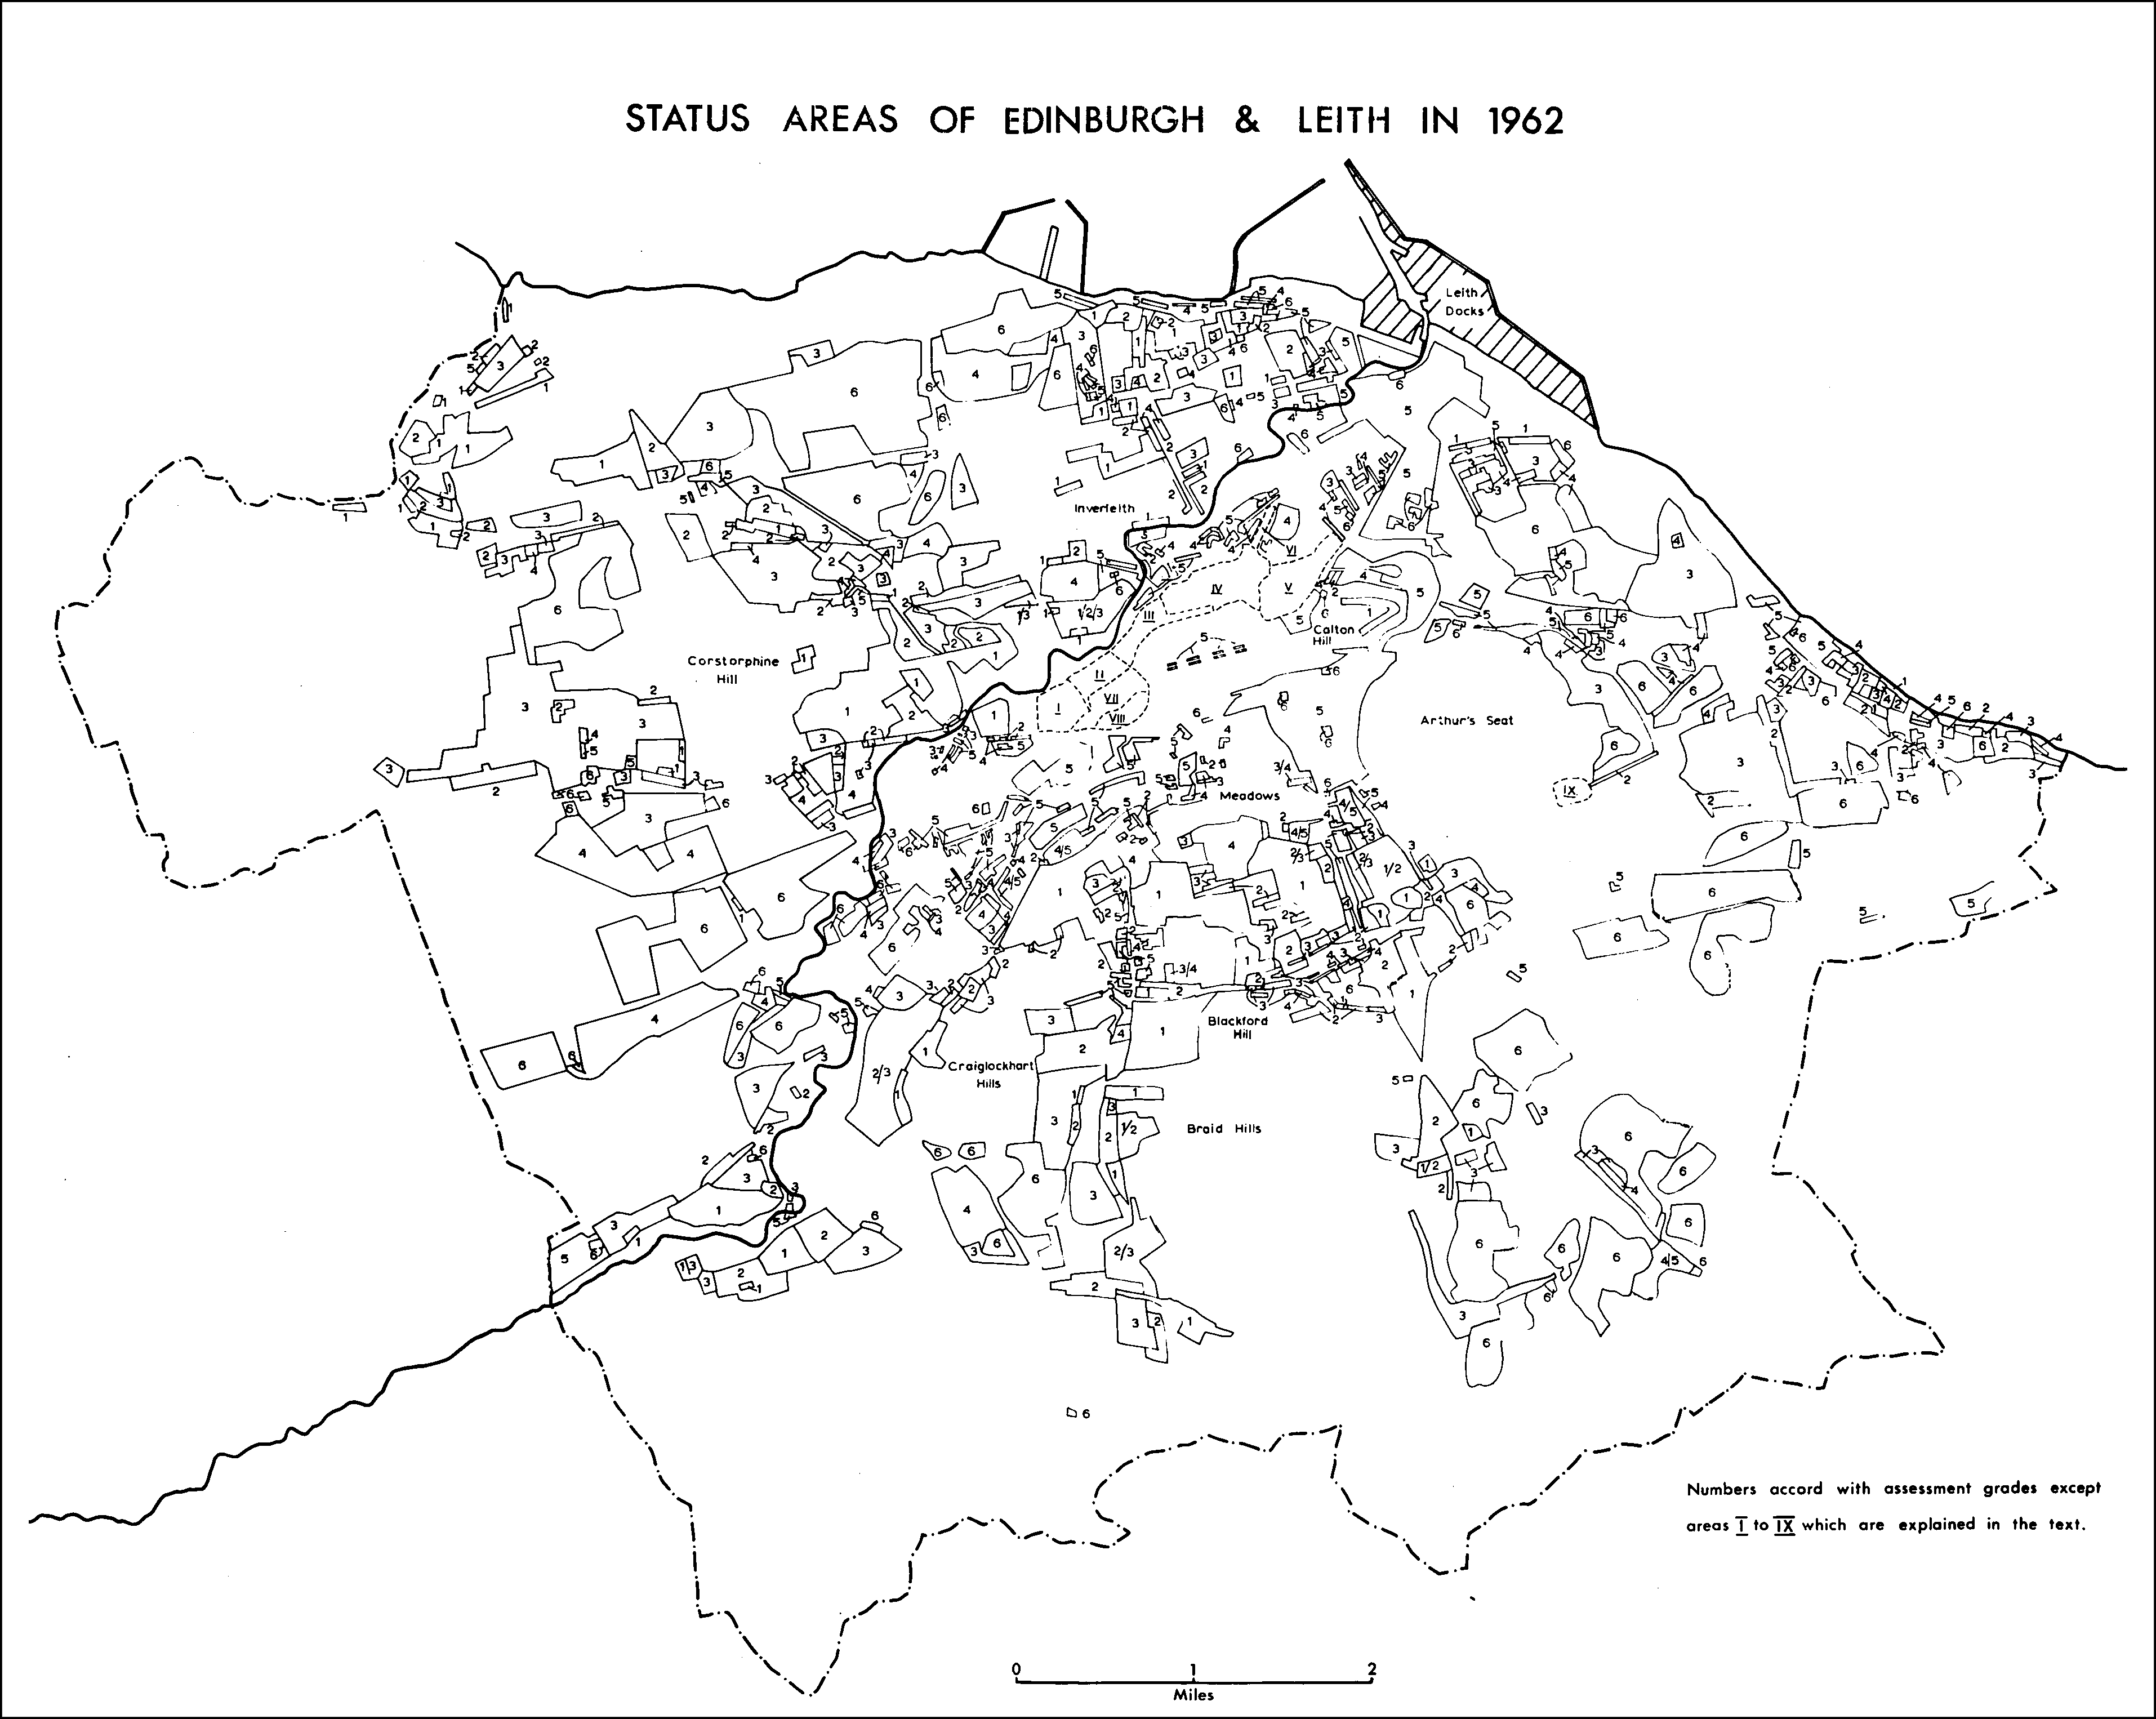 Status areas of Edinburgh & Leith in 1962